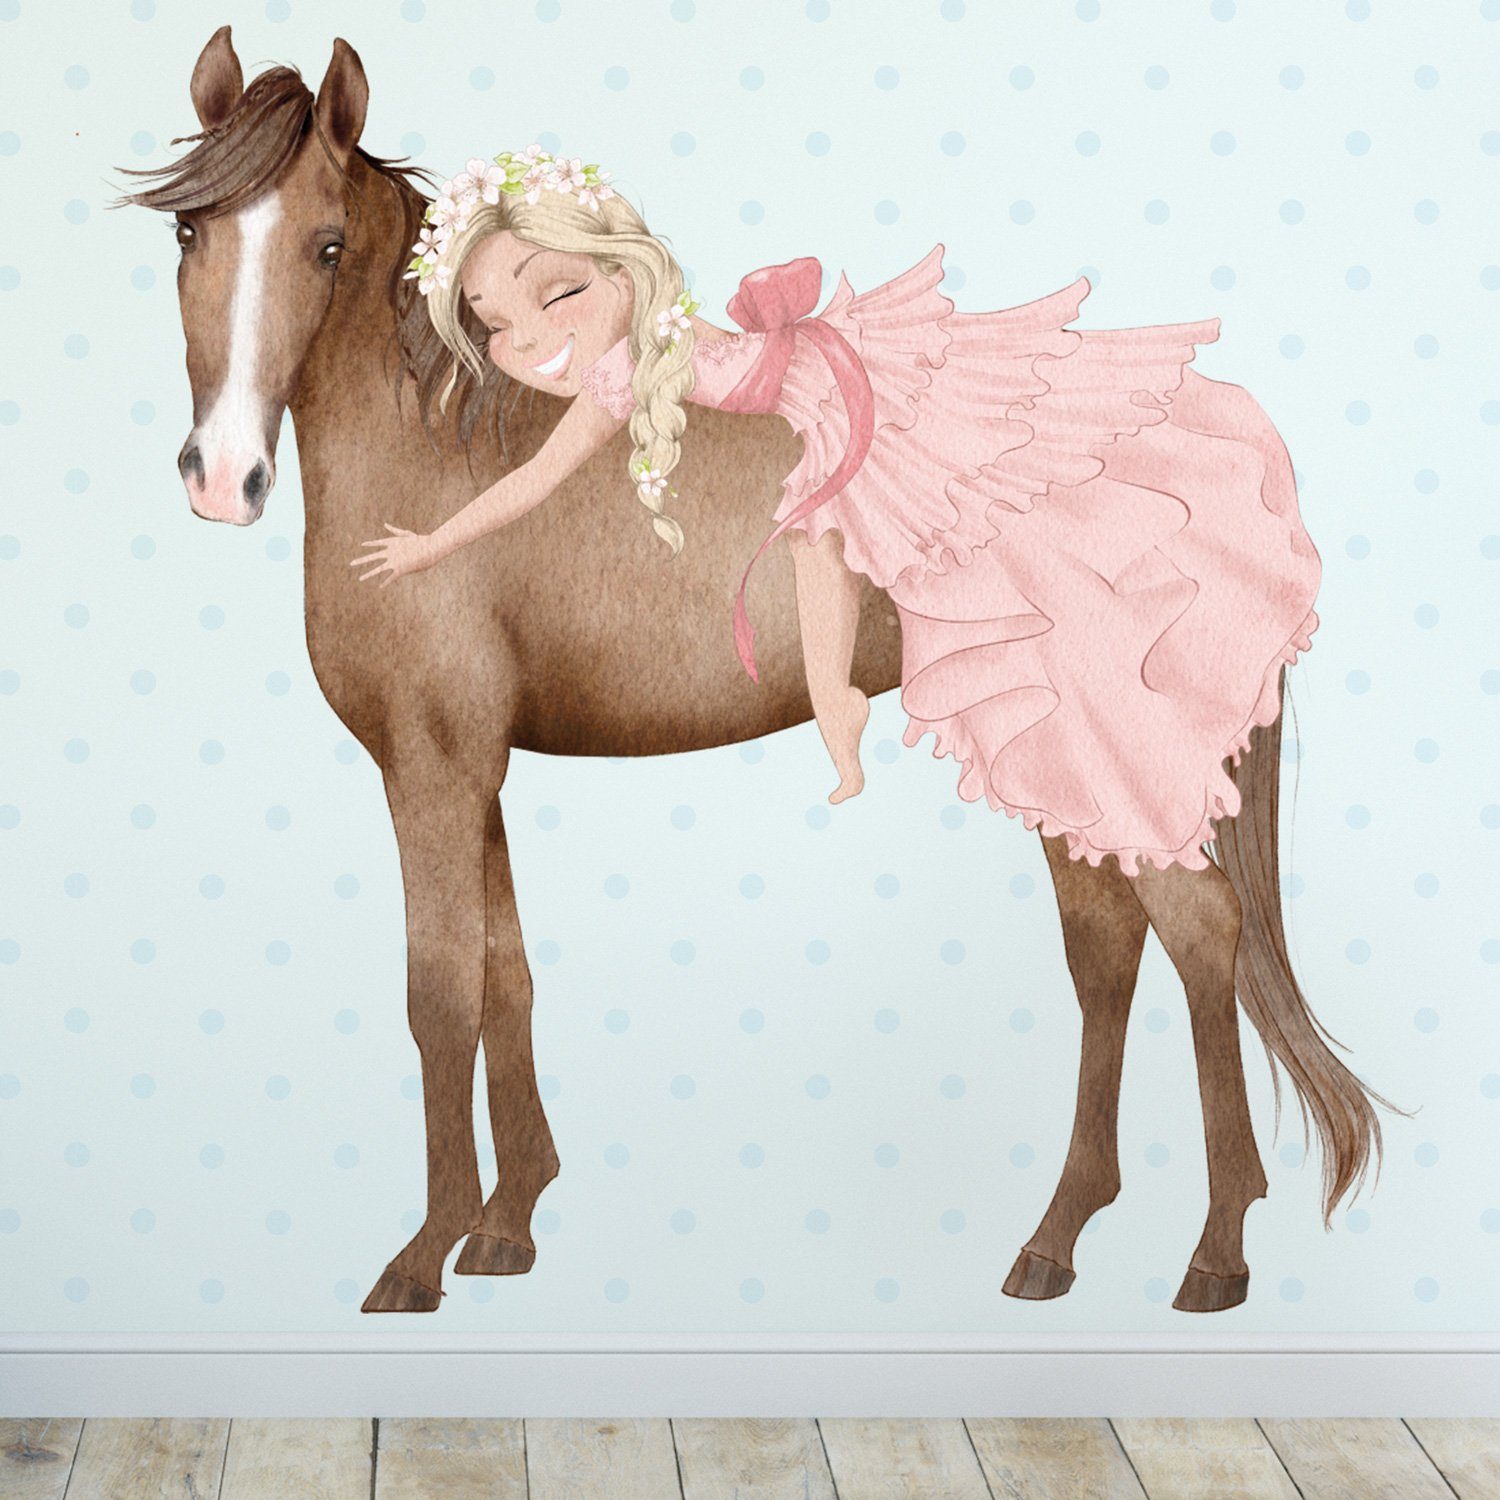 Sunnywall Wandtattoo Prinzessin Mädchen auf Pferd, Wandaufkleber Kinderzimmer, Pferde, selbstklebend, rückstandslos entfernbar